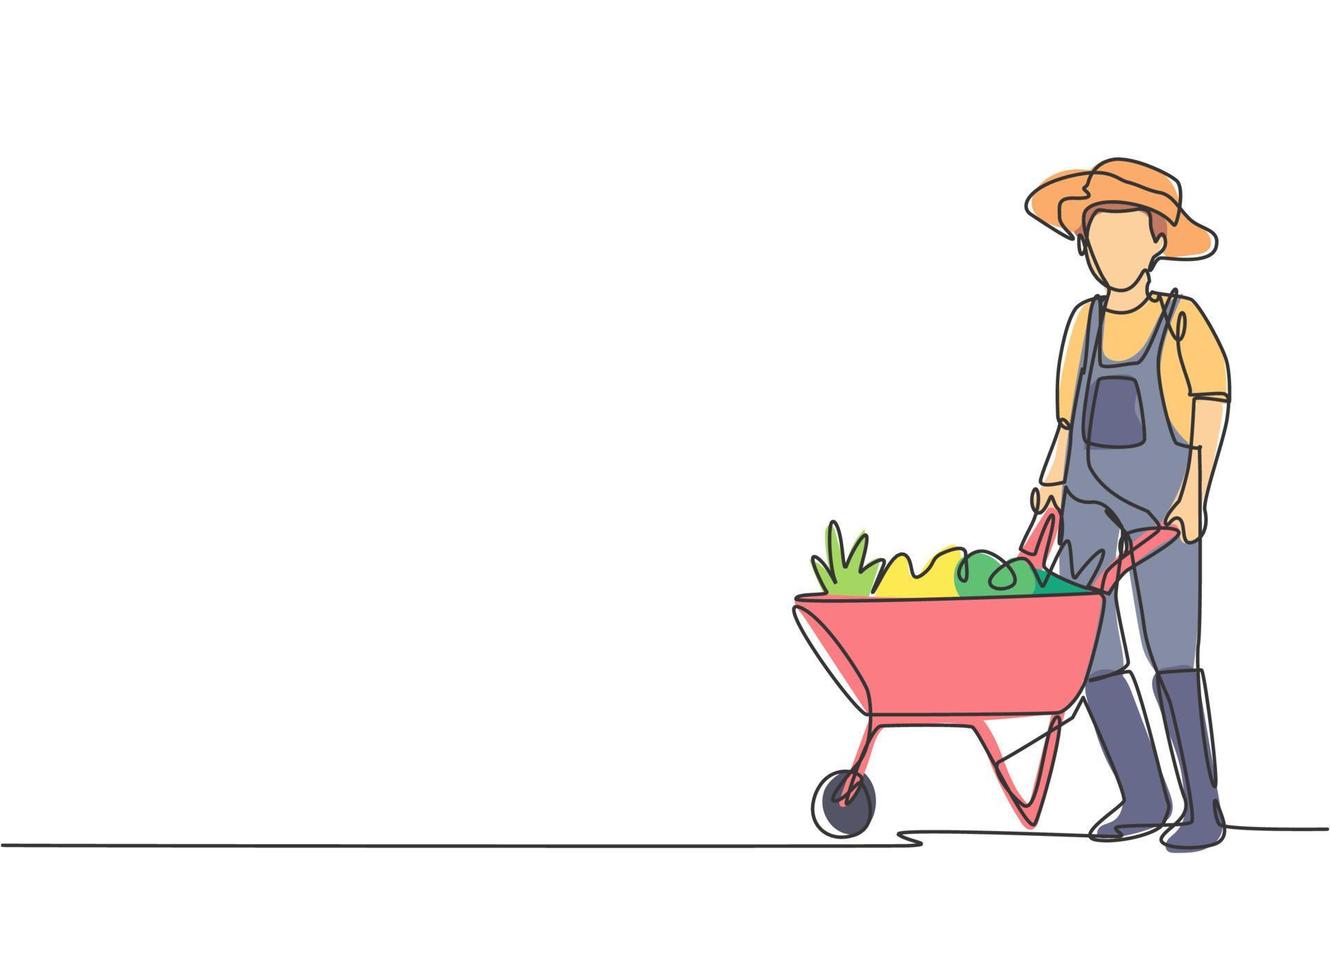 disegno di un giovane agricoltore maschio in piedi accanto al carrello della carriola pieno di frutta. concetto minimalista di sfida agricola. illustrazione vettoriale grafica di disegno di disegno di linea continua